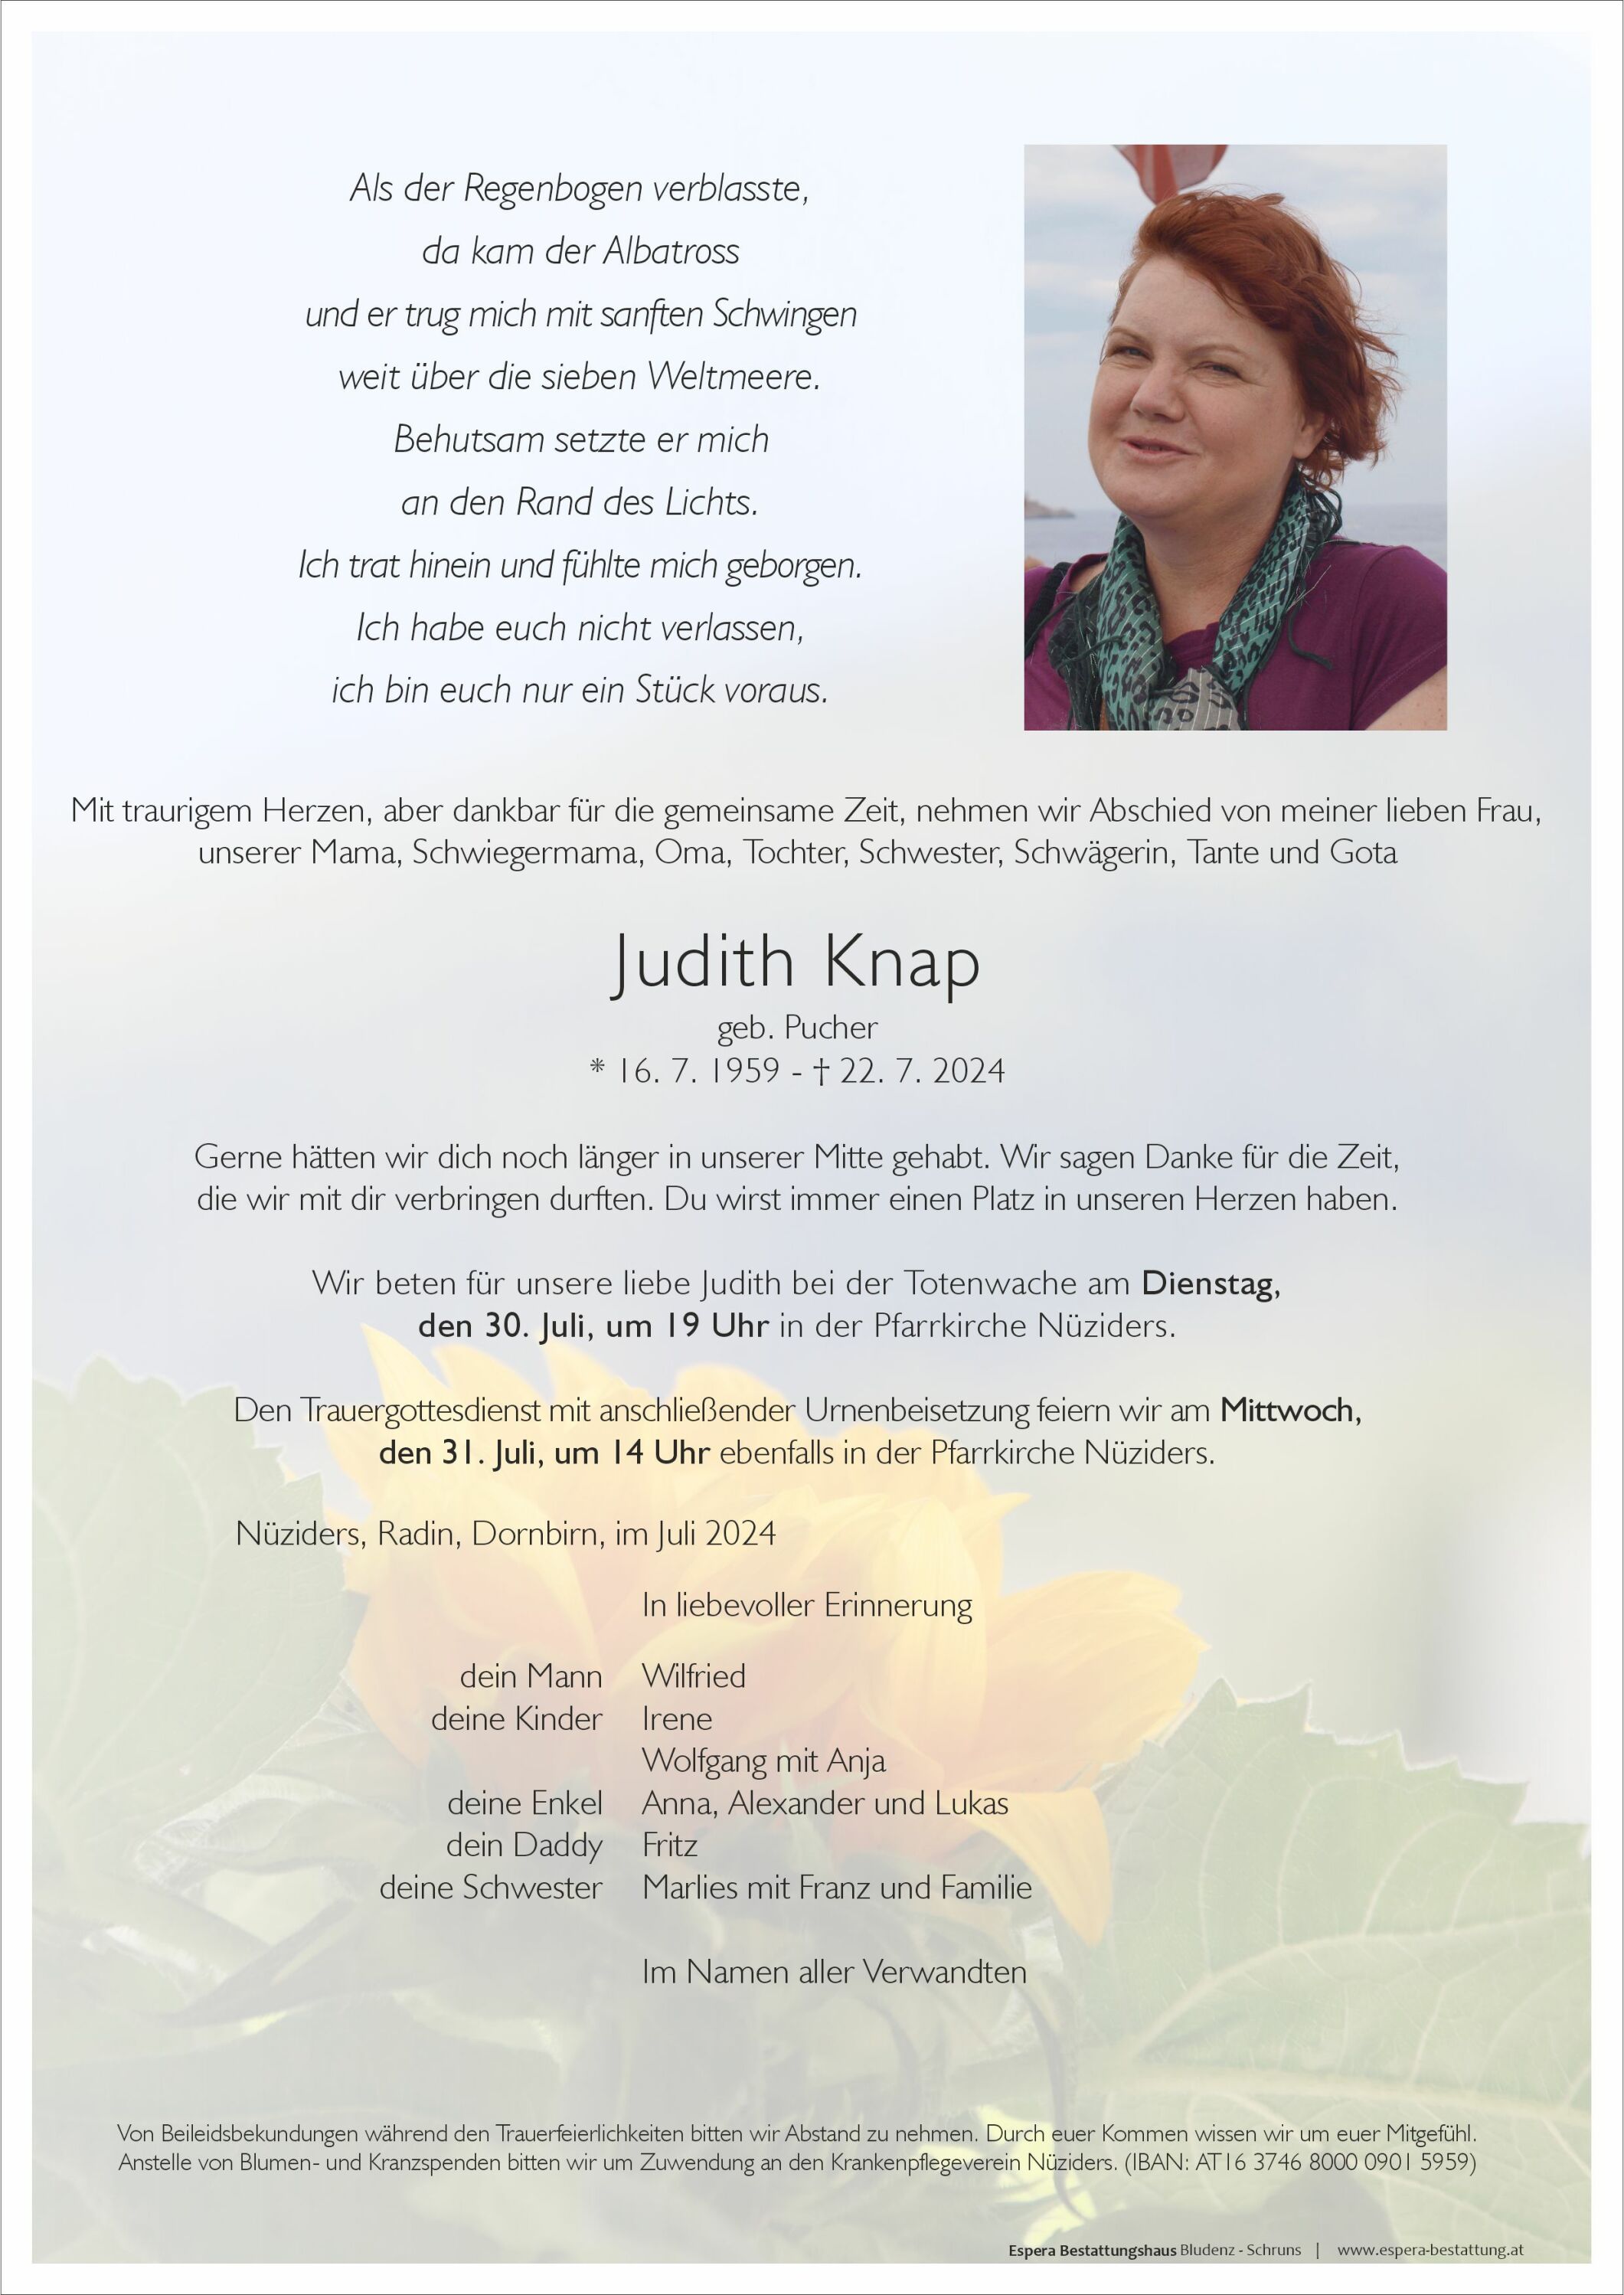 Judith Knap